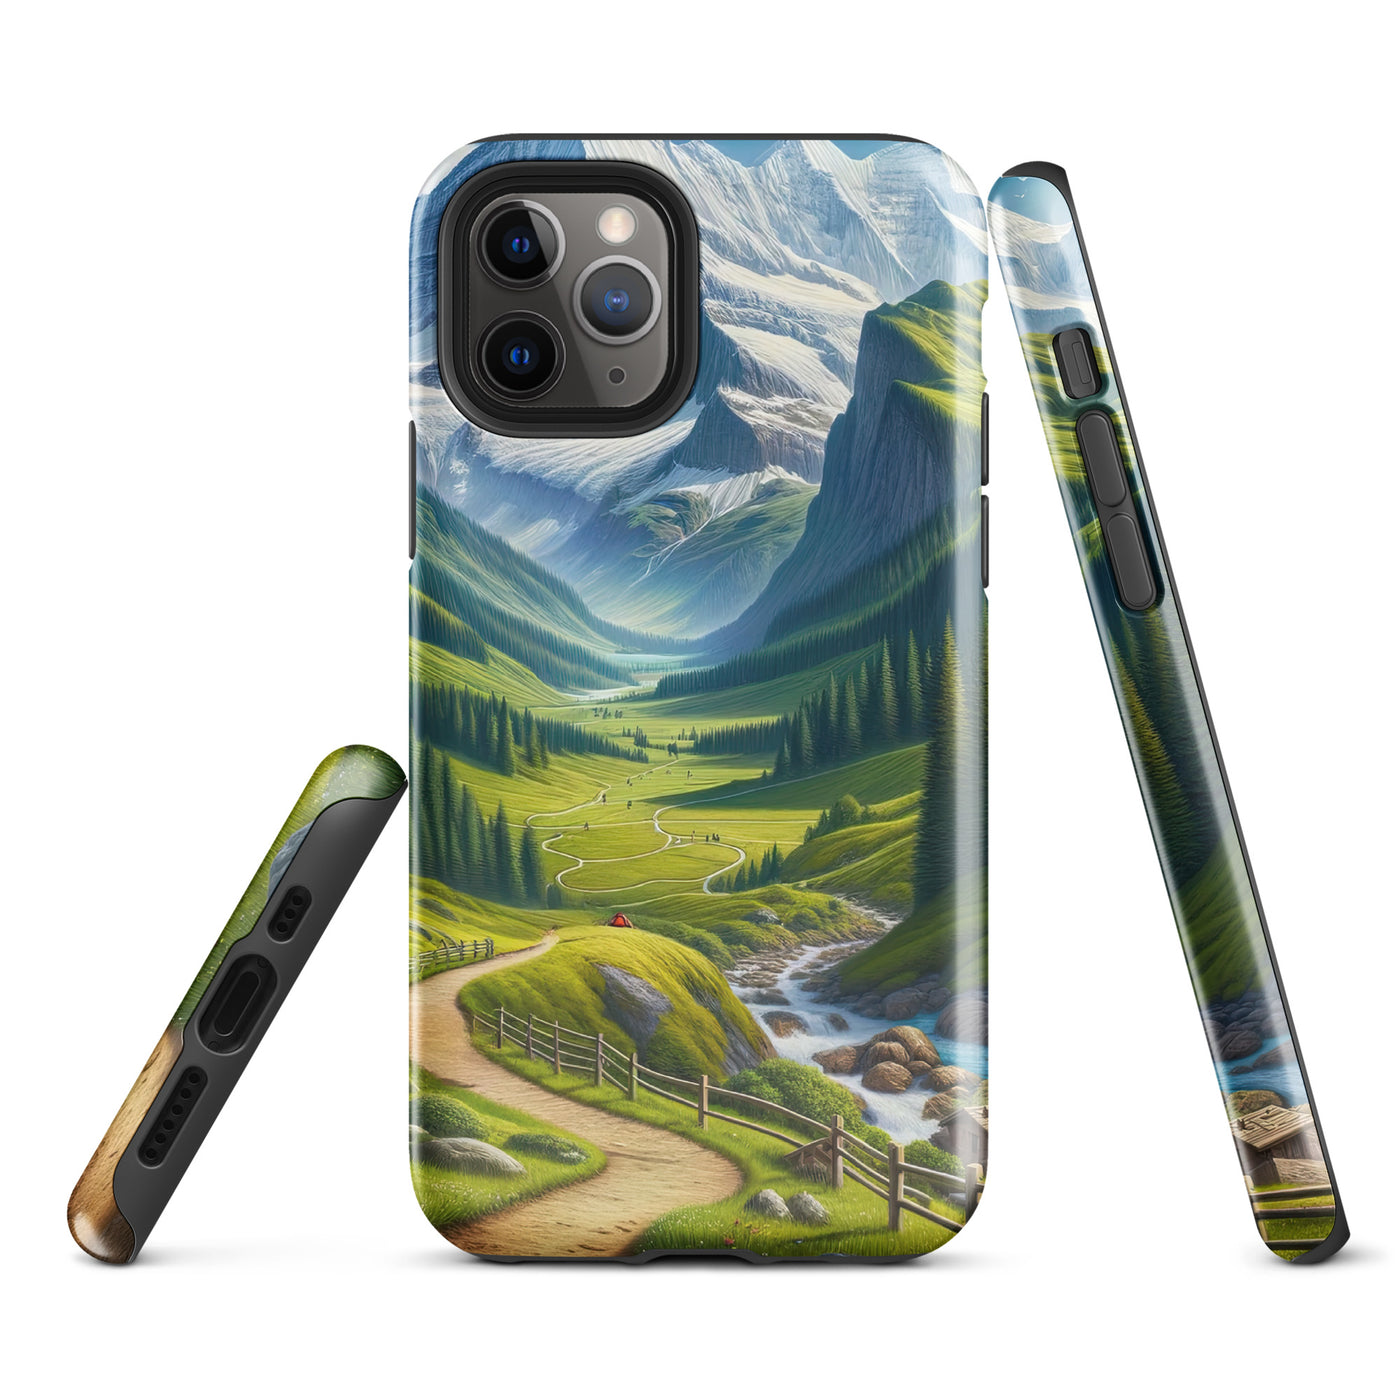 Wanderer in den Bergen und Wald: Digitale Malerei mit grünen kurvenreichen Pfaden - iPhone Schutzhülle (robust) wandern xxx yyy zzz iPhone 11 Pro